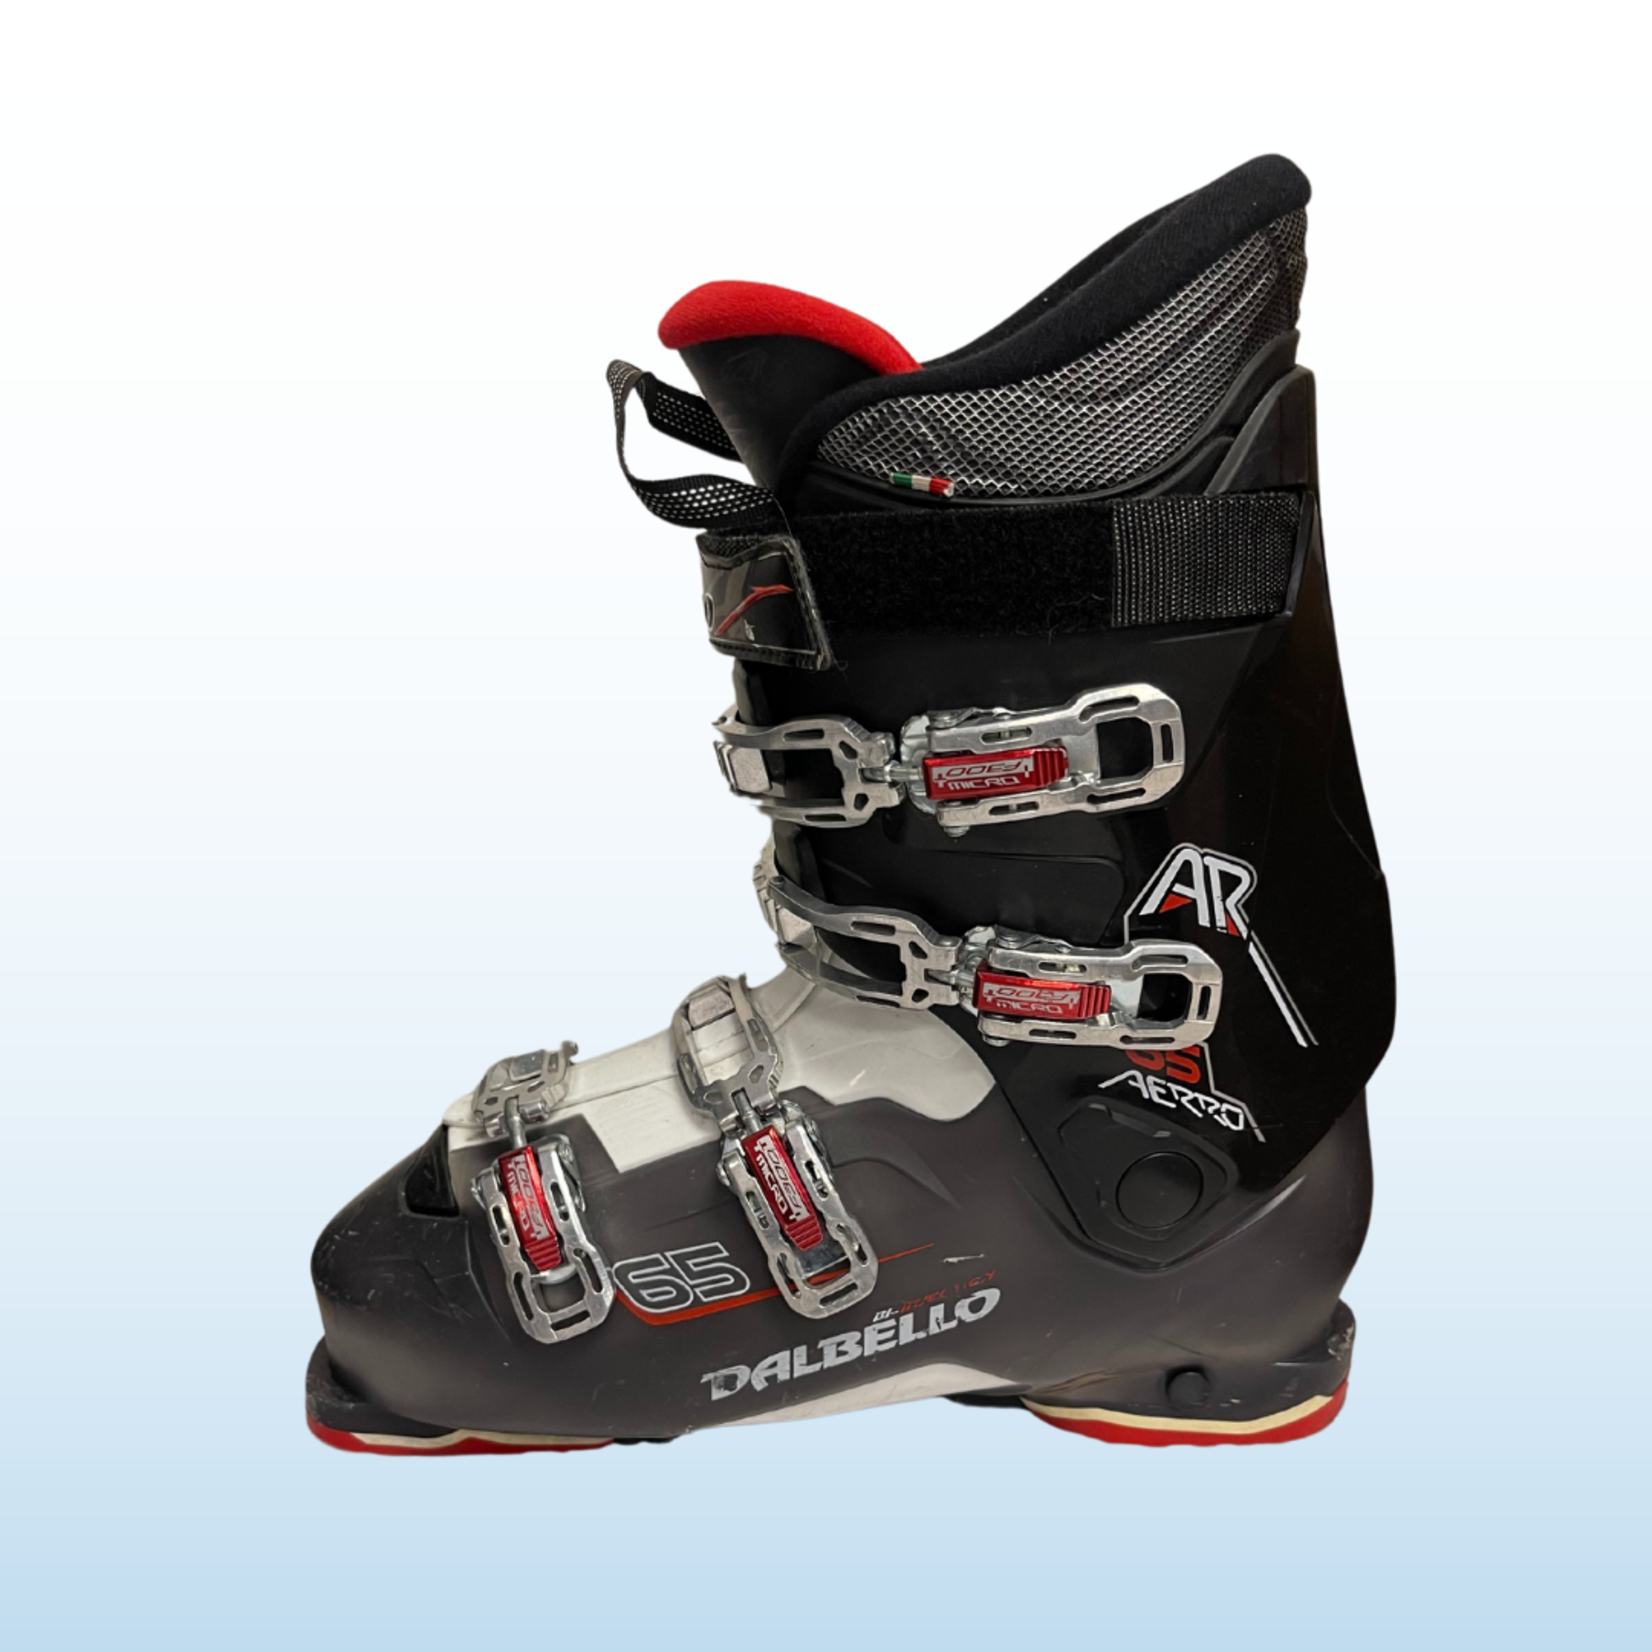 Dalbello Dalbello Aerro 65 Ski Boots, Size 29.5